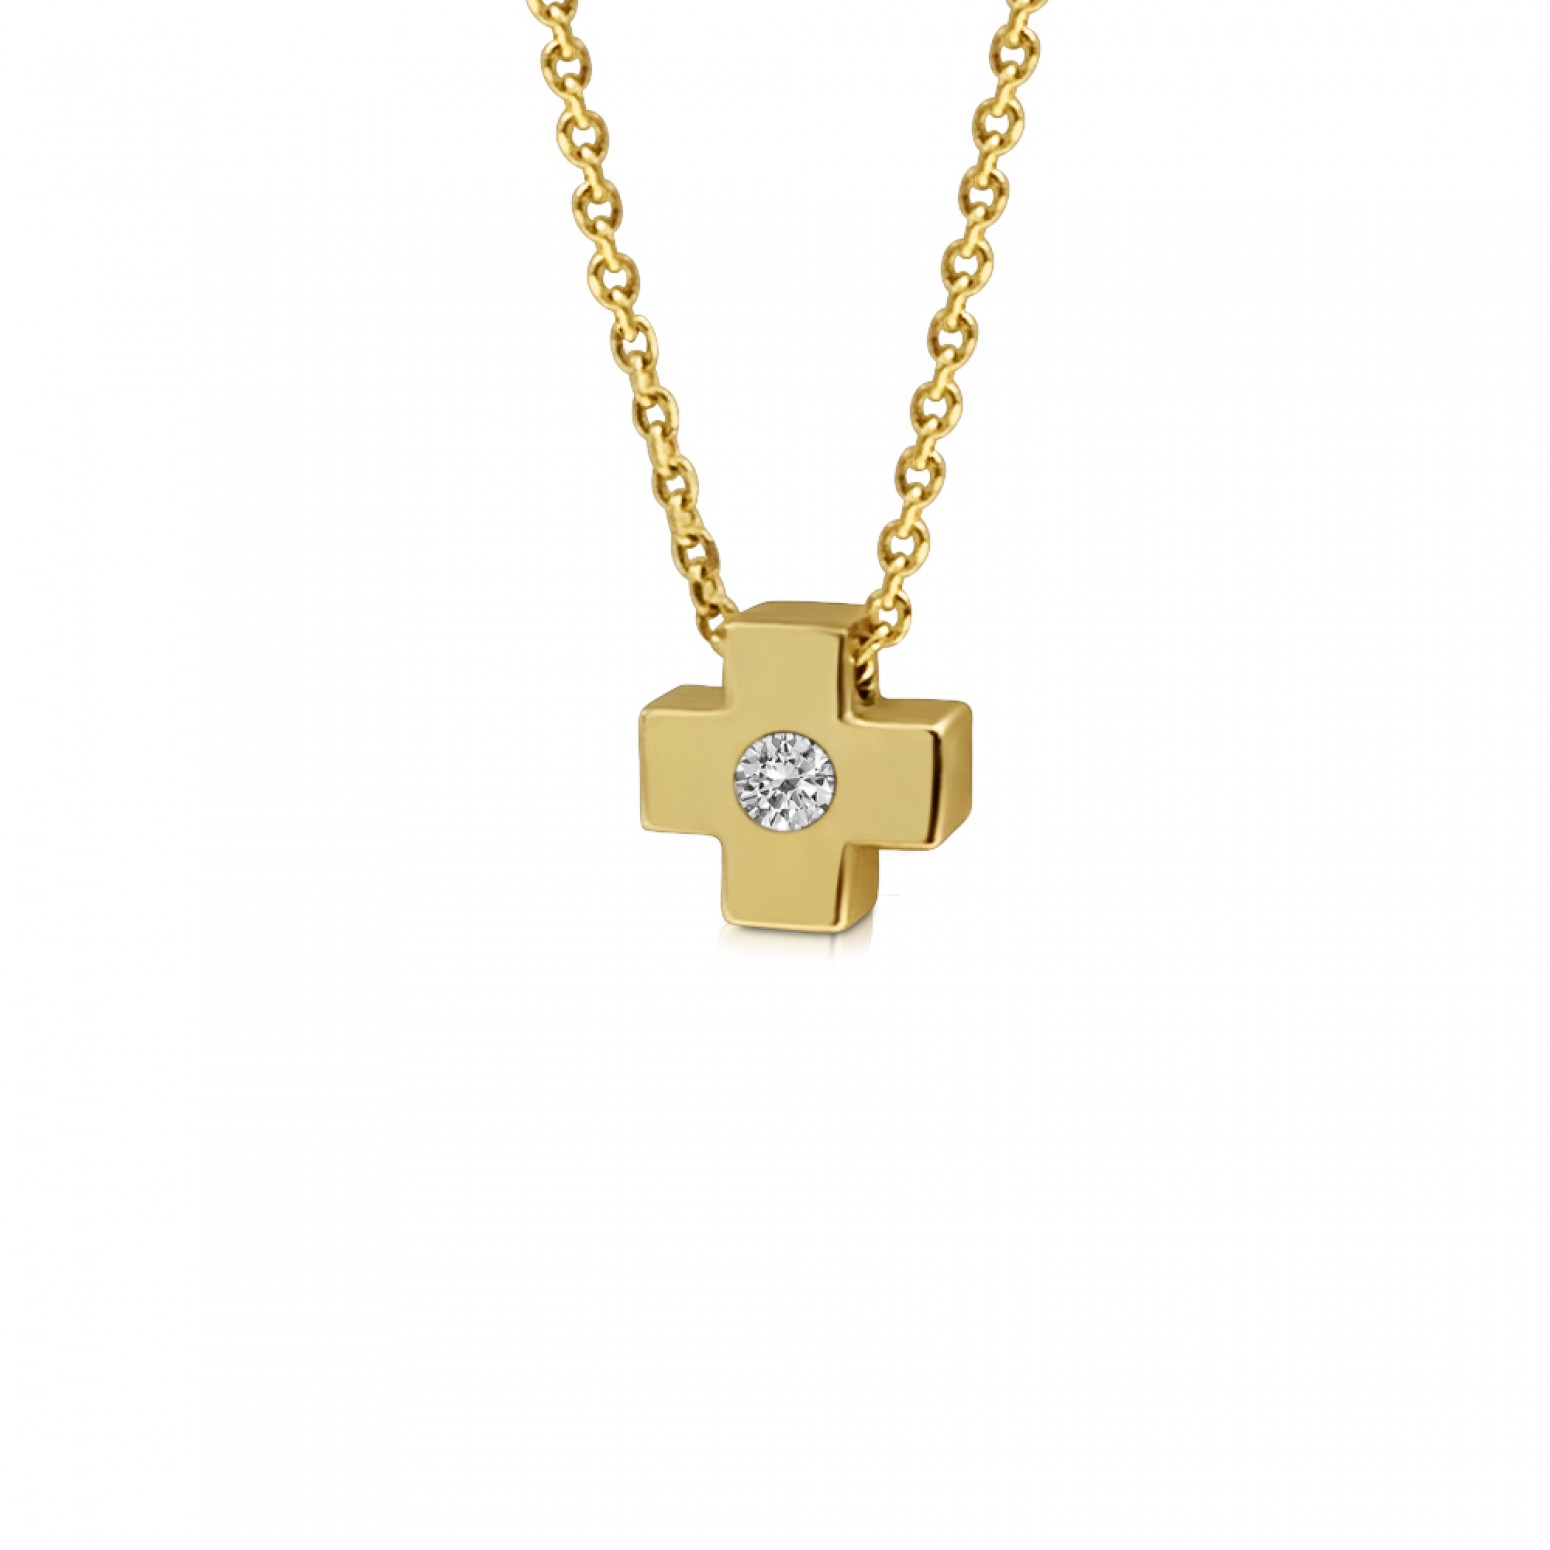 Cross necklace, Κ9 gold with zircon, ko4495 NECKLACES Κοσμηματα - chrilia.gr